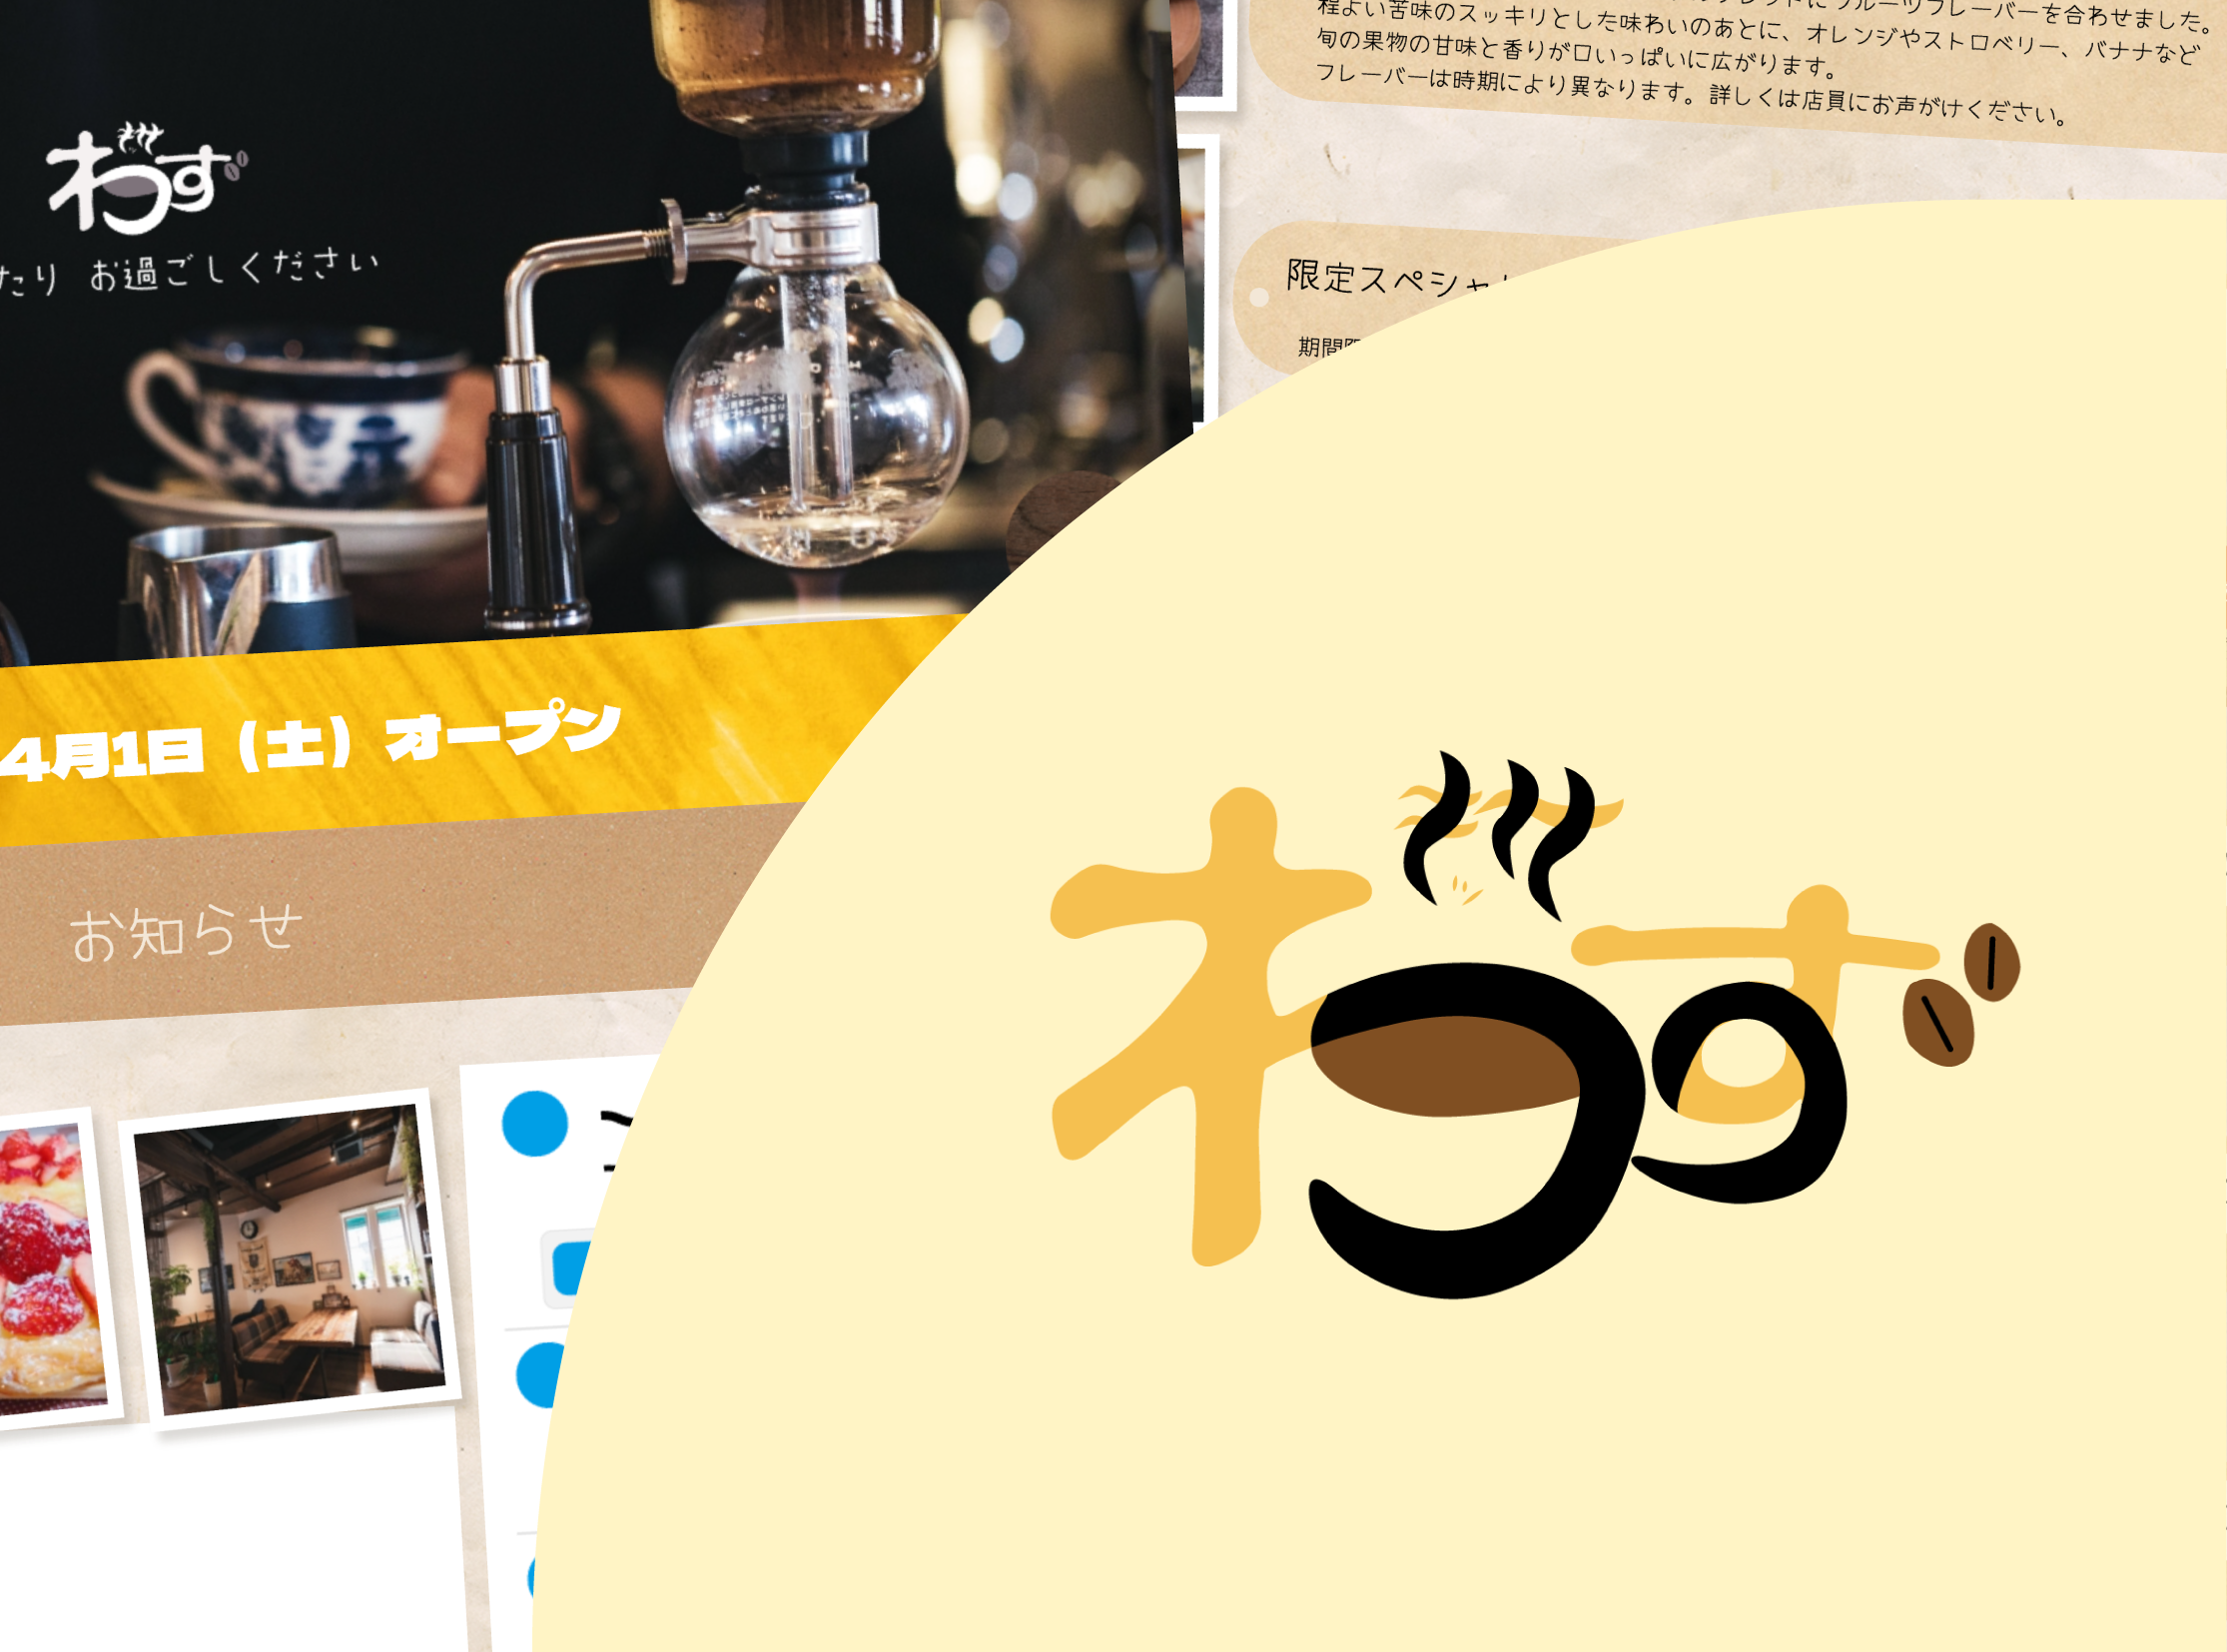 架空新規店舗Webサイト「喫茶わず」の作品詳細のサムネイル